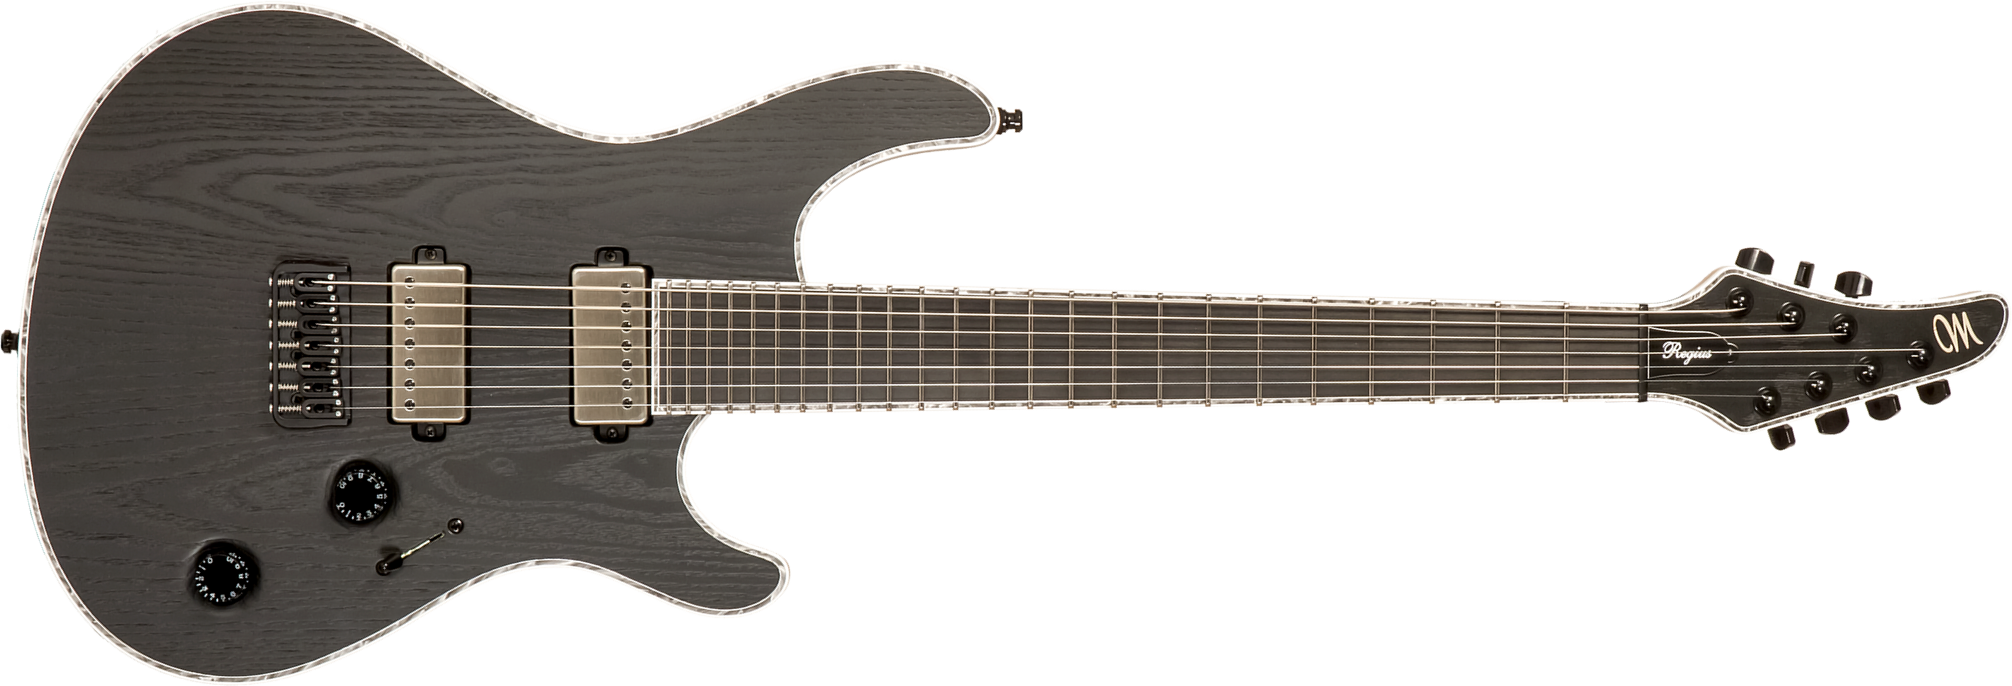 Mayones Guitars Regius Gothic Ash 7c 2h Bkp Ht Eb #rf2312801 - Gothic Black Ash - Guitare Électrique 7 Cordes - Main picture